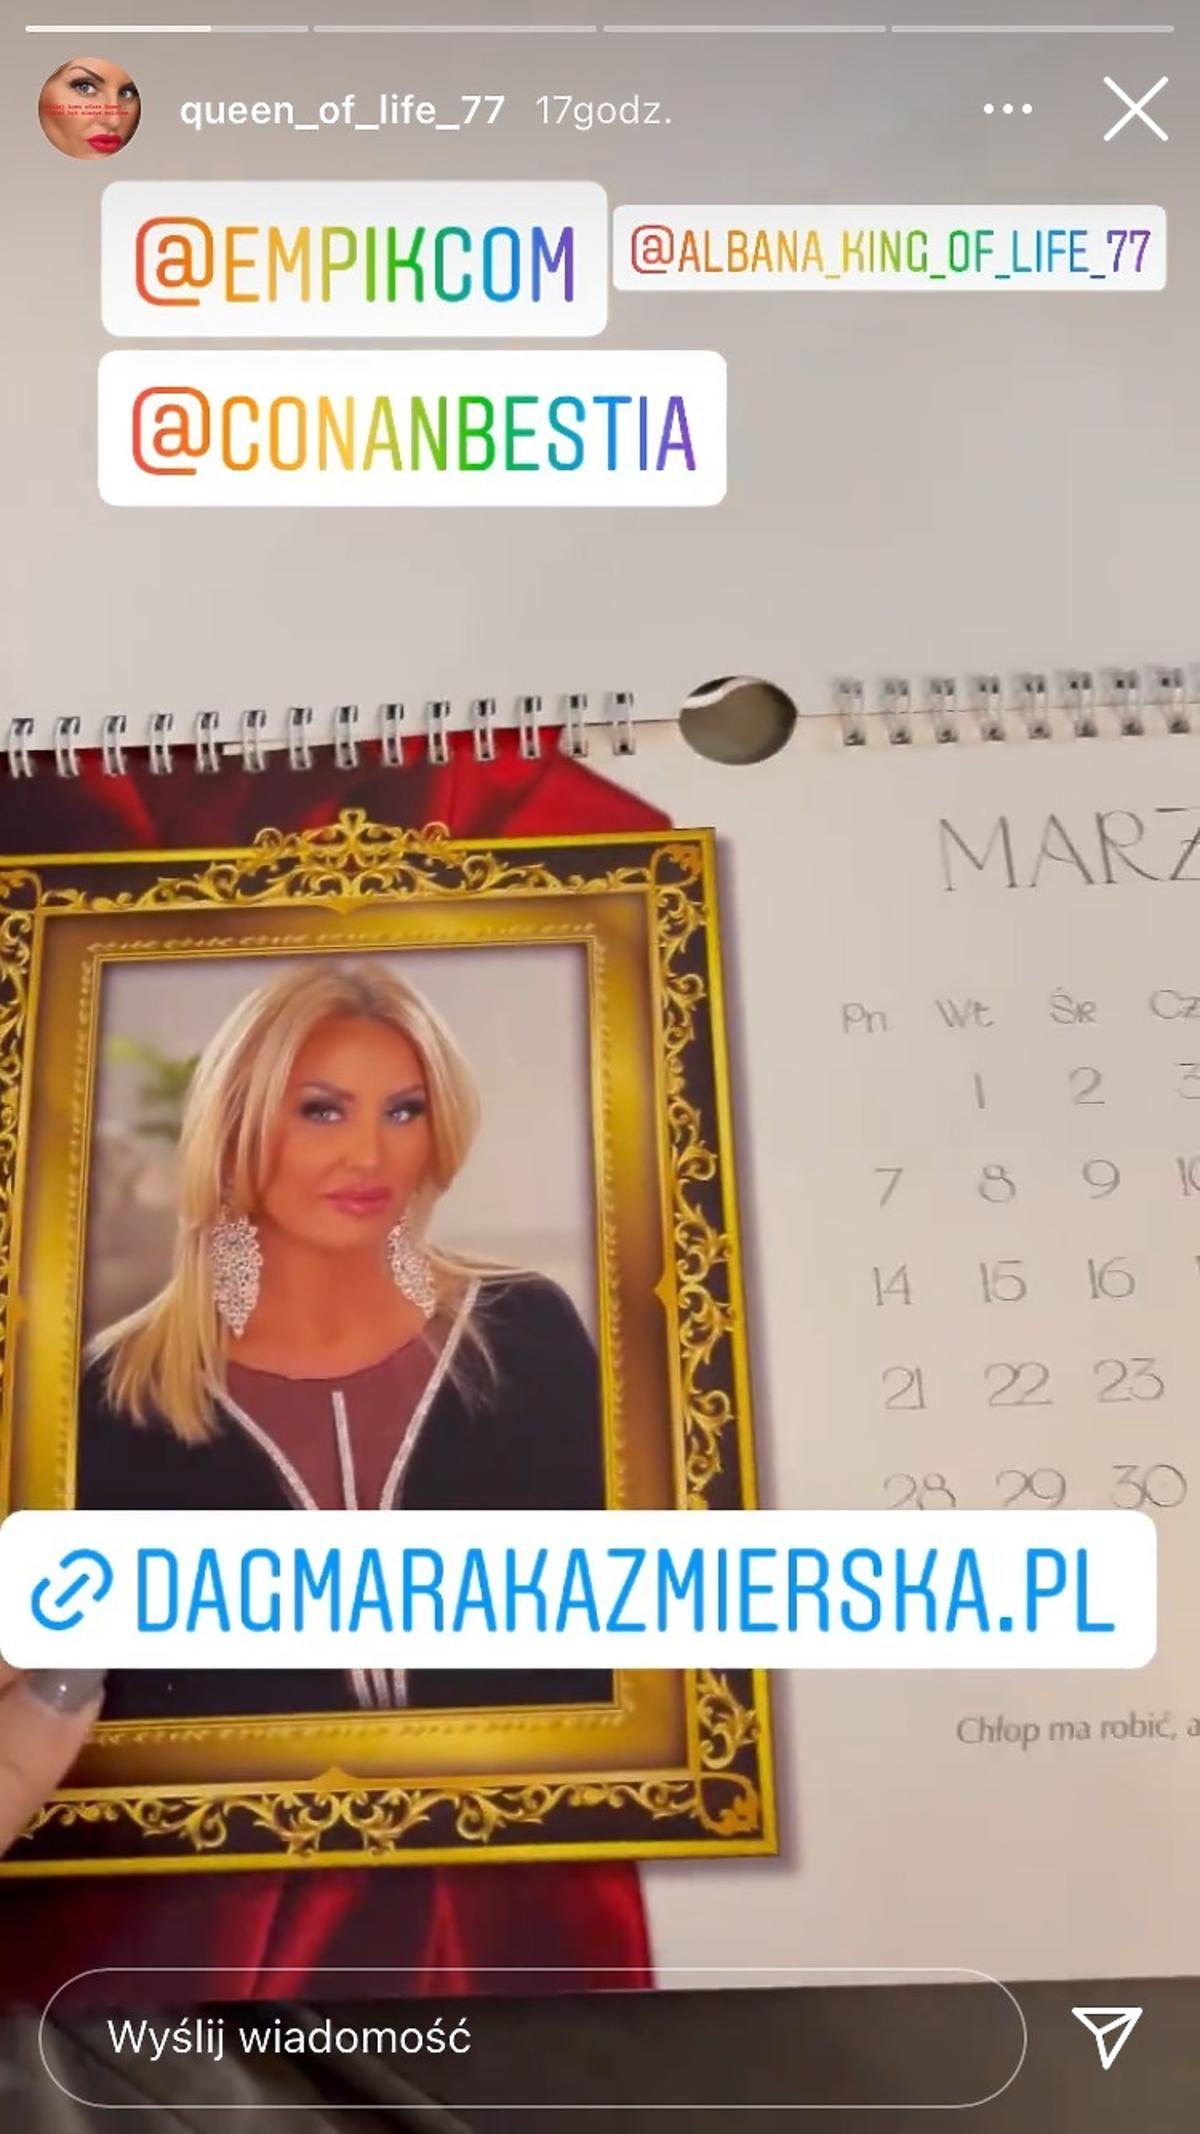 Dagmara Kaźmierska sprzedaje kalendarz